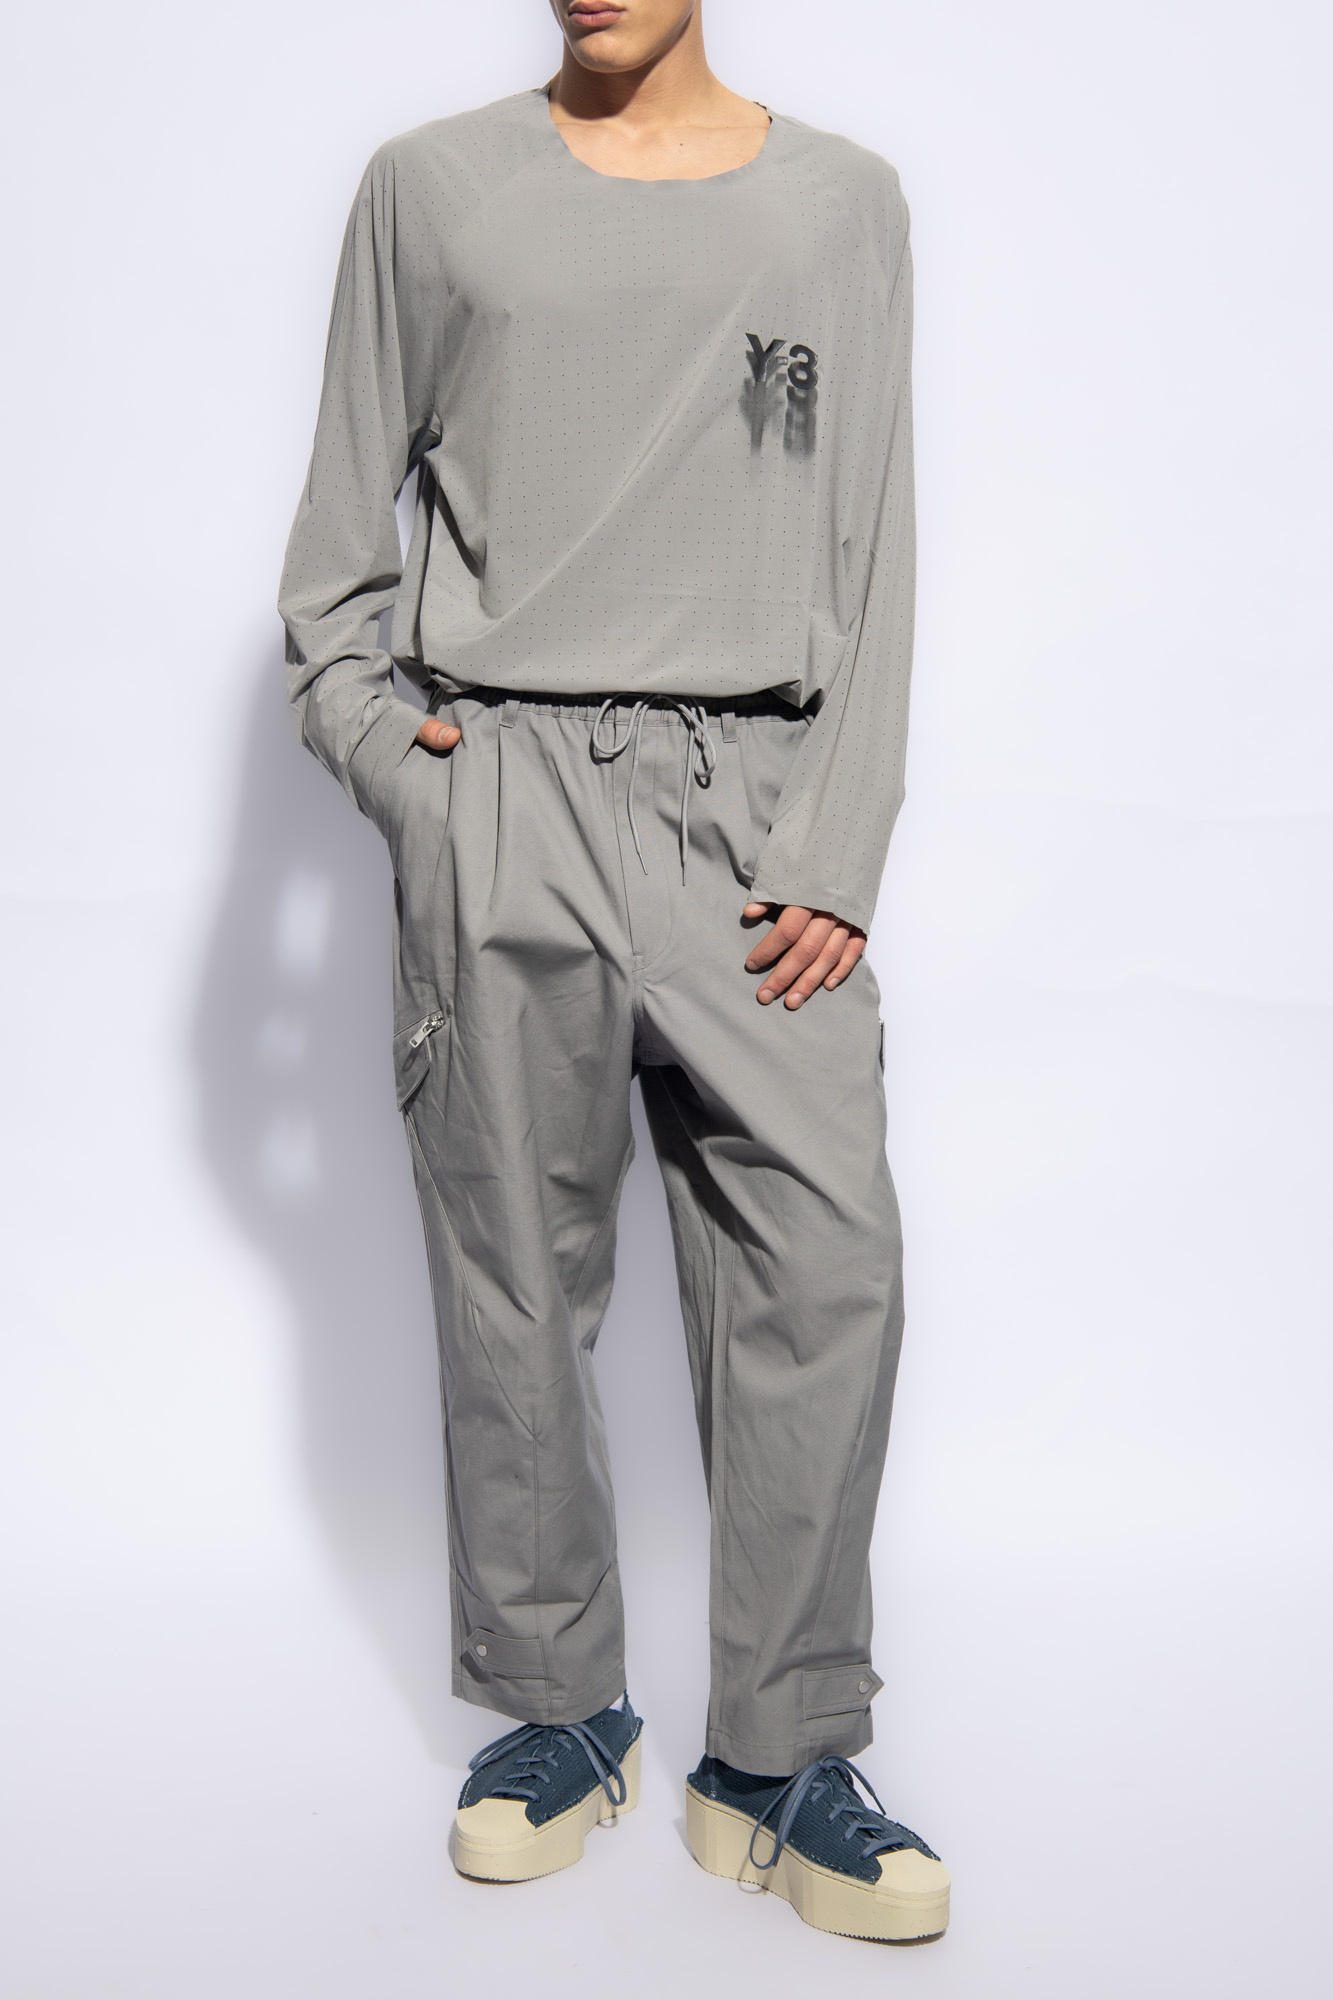 SchaferandweinerShops Canada - Grey Cotton cargo trousers Y - 3 